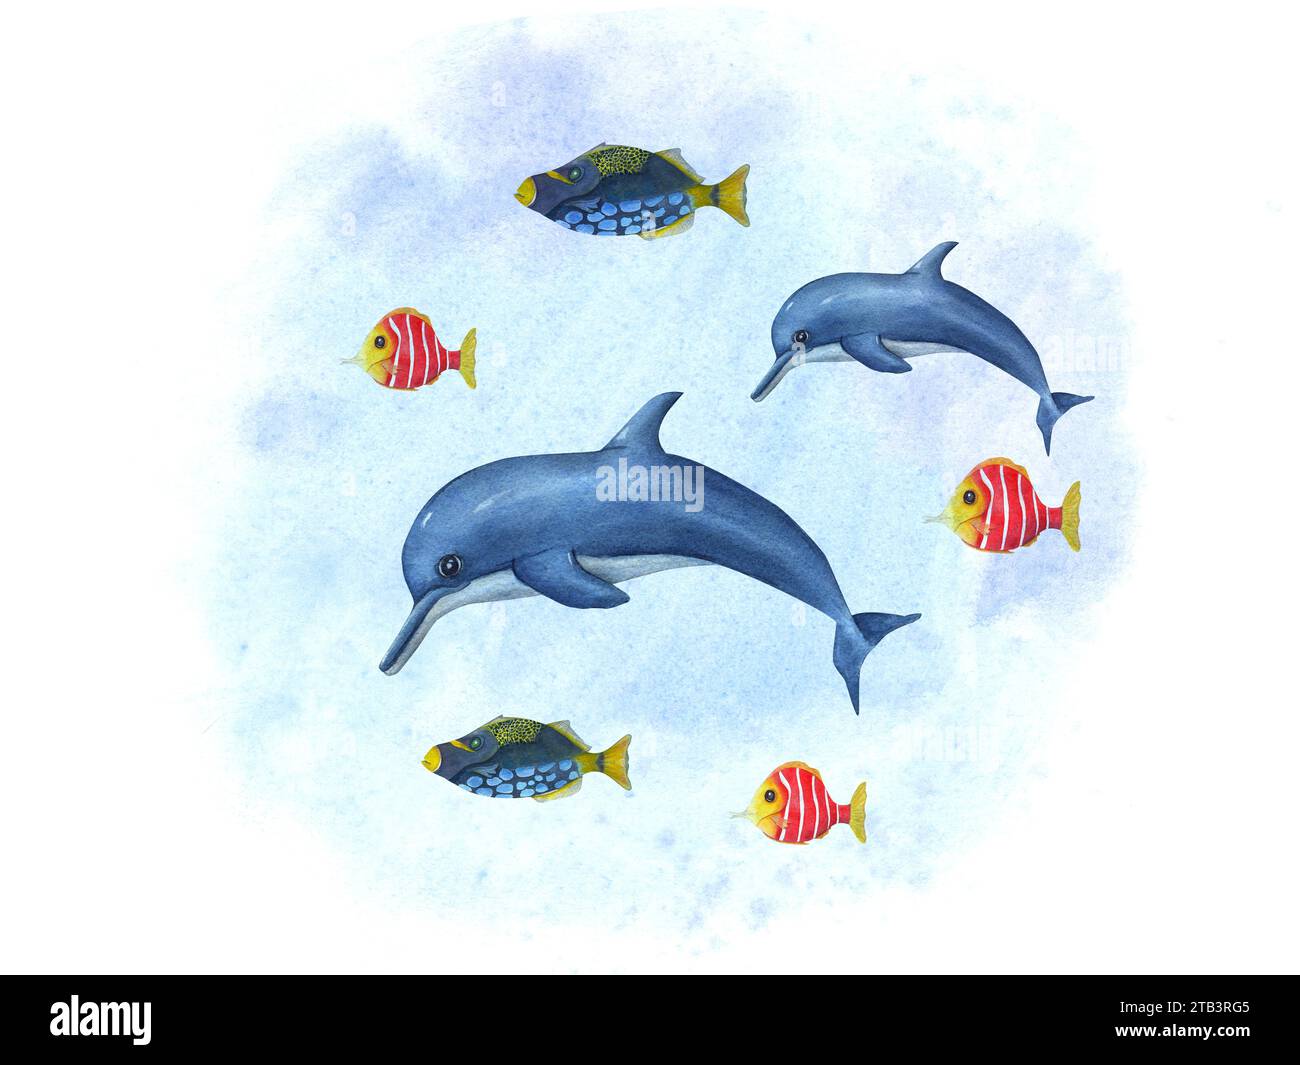 Dessin animé nageant des dauphins parmi de petits poissons multicolores. Marsouin, poisson-gâchette. Composition de la mer sur fond aquarelle. Illustration dessinée à la main Banque D'Images